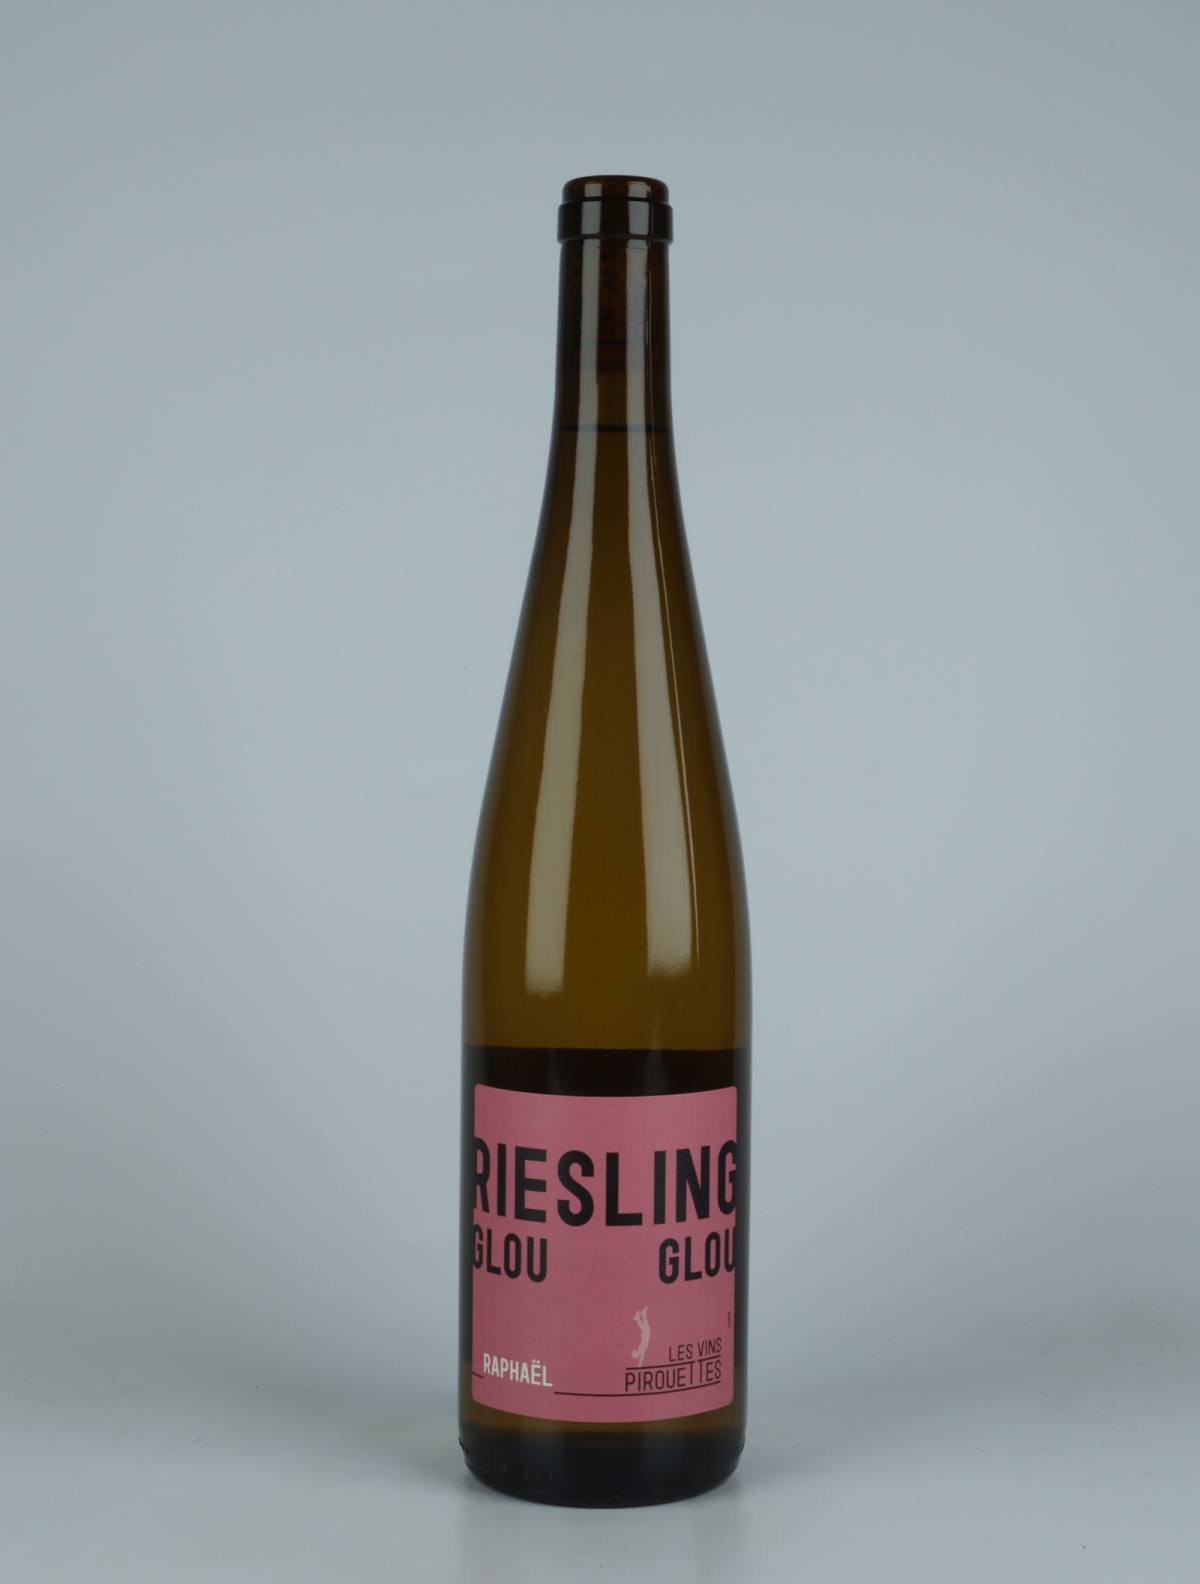 En flaske 2018 Riesling Glou Glou de Raphaël Hvidvin fra Les Vins Pirouettes, Alsace i Frankrig